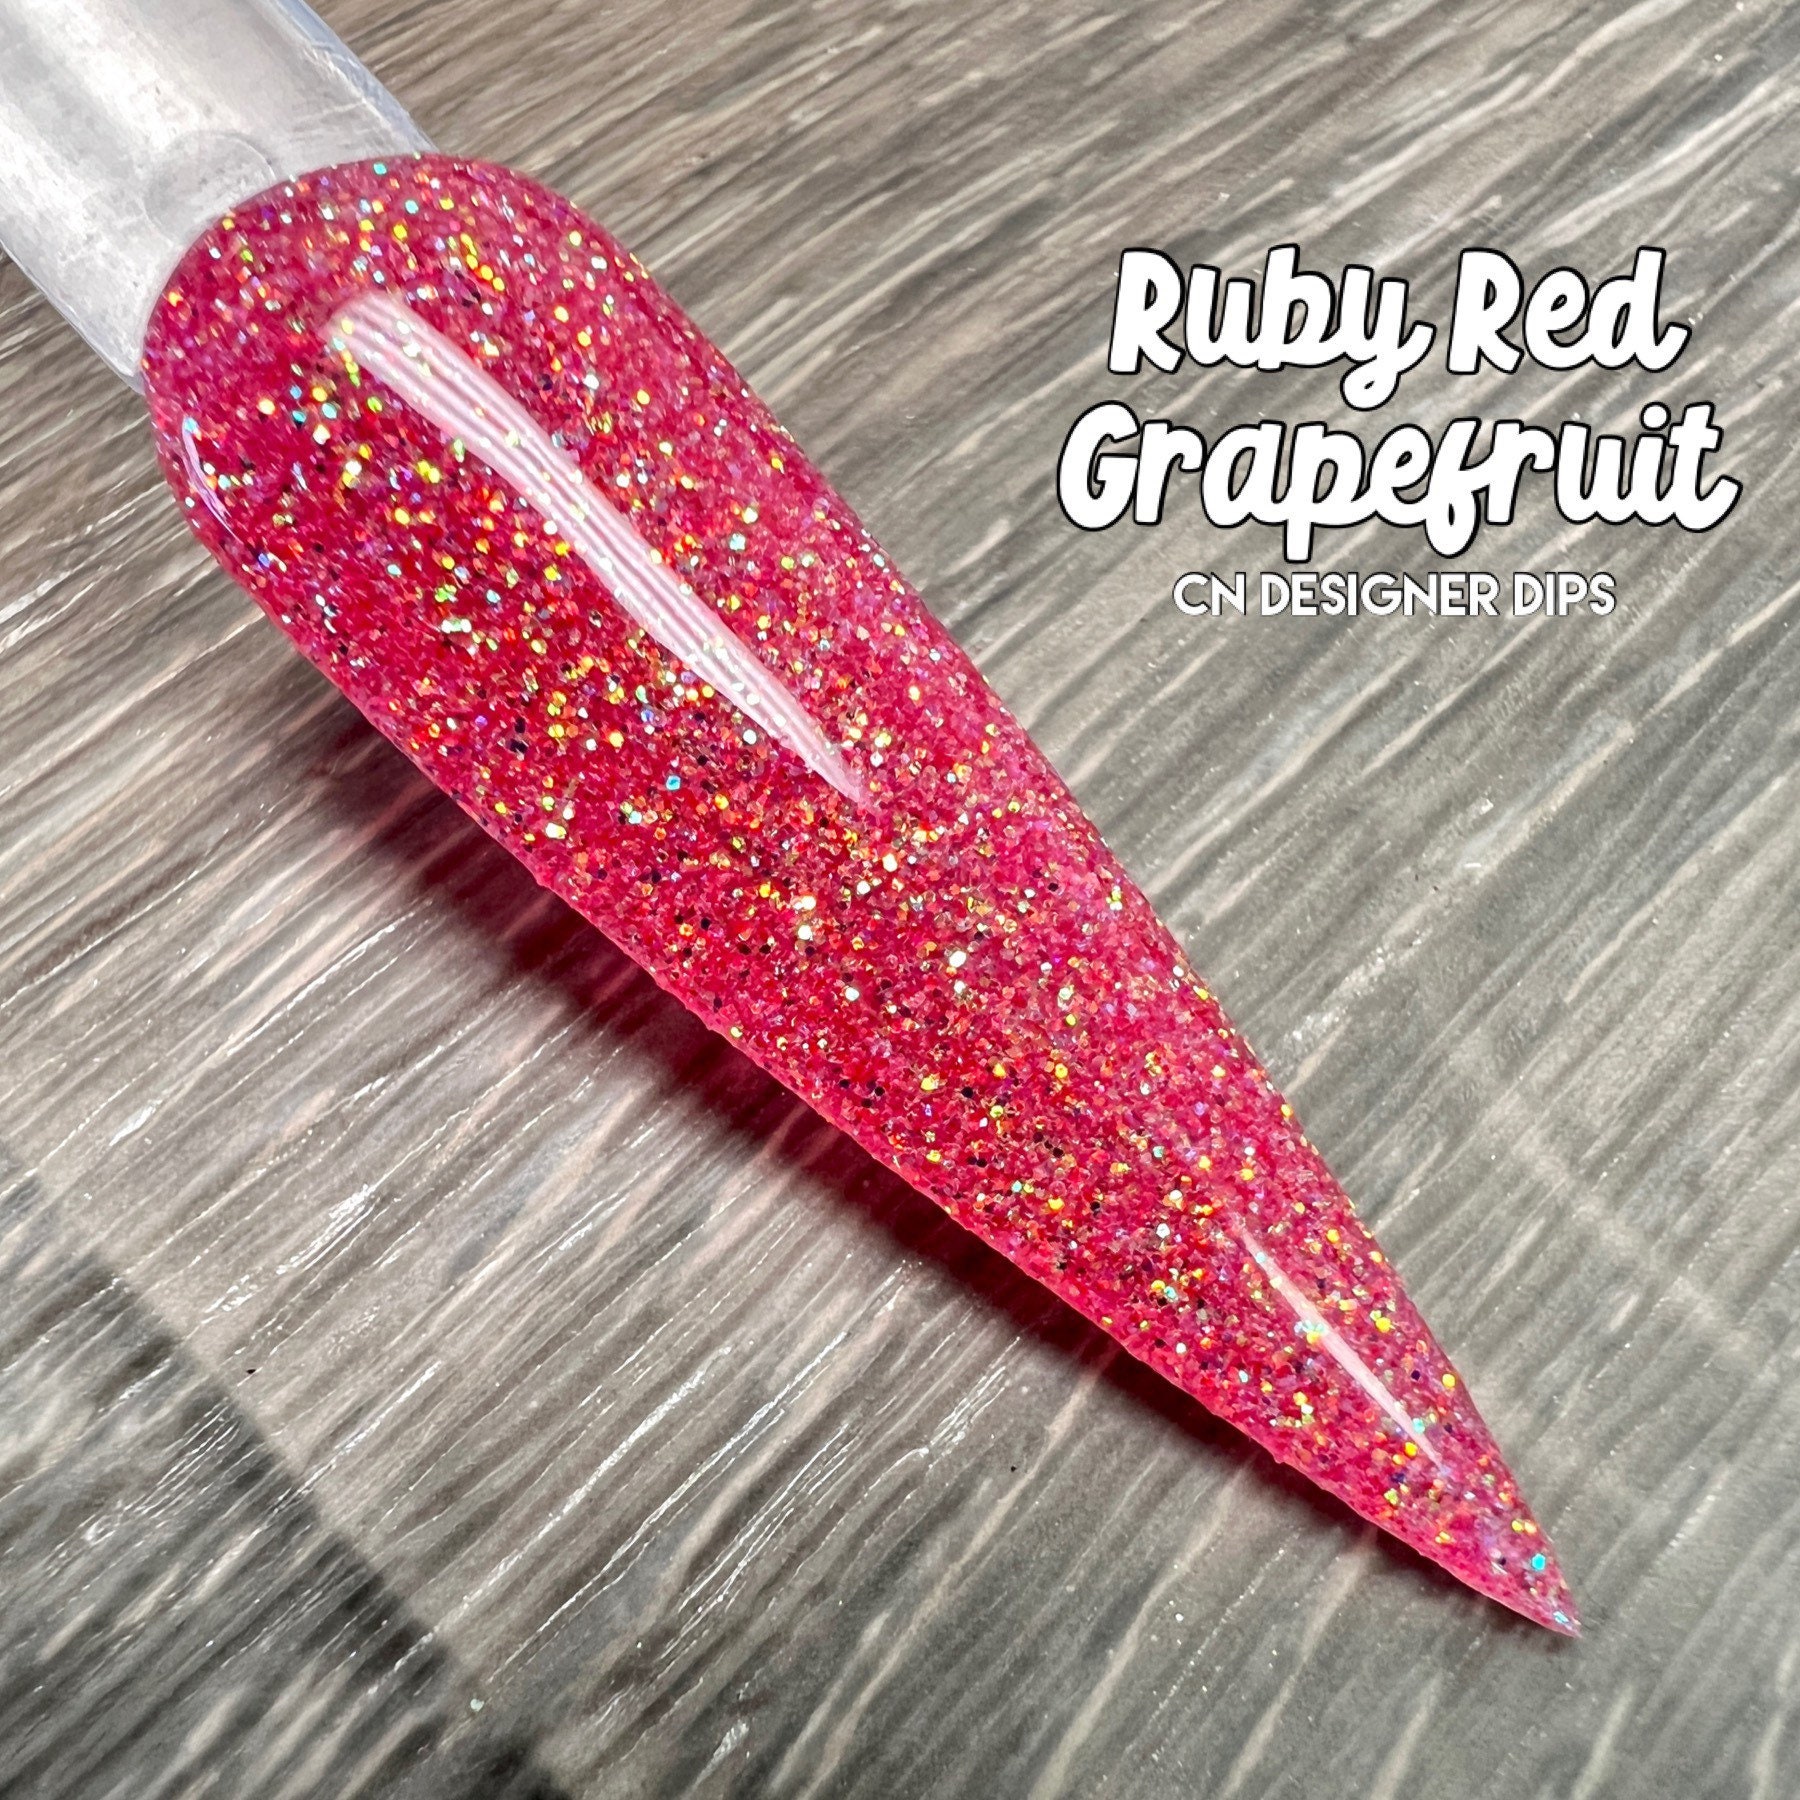 Ruby Red Grapefruit - Dippulver, Dippulver Für Nägel, Nagel Dip, Dip Nagel, Nail, Dip-Pulver, Nagelpulver, Acryl von Etsy - CNDesignerDips